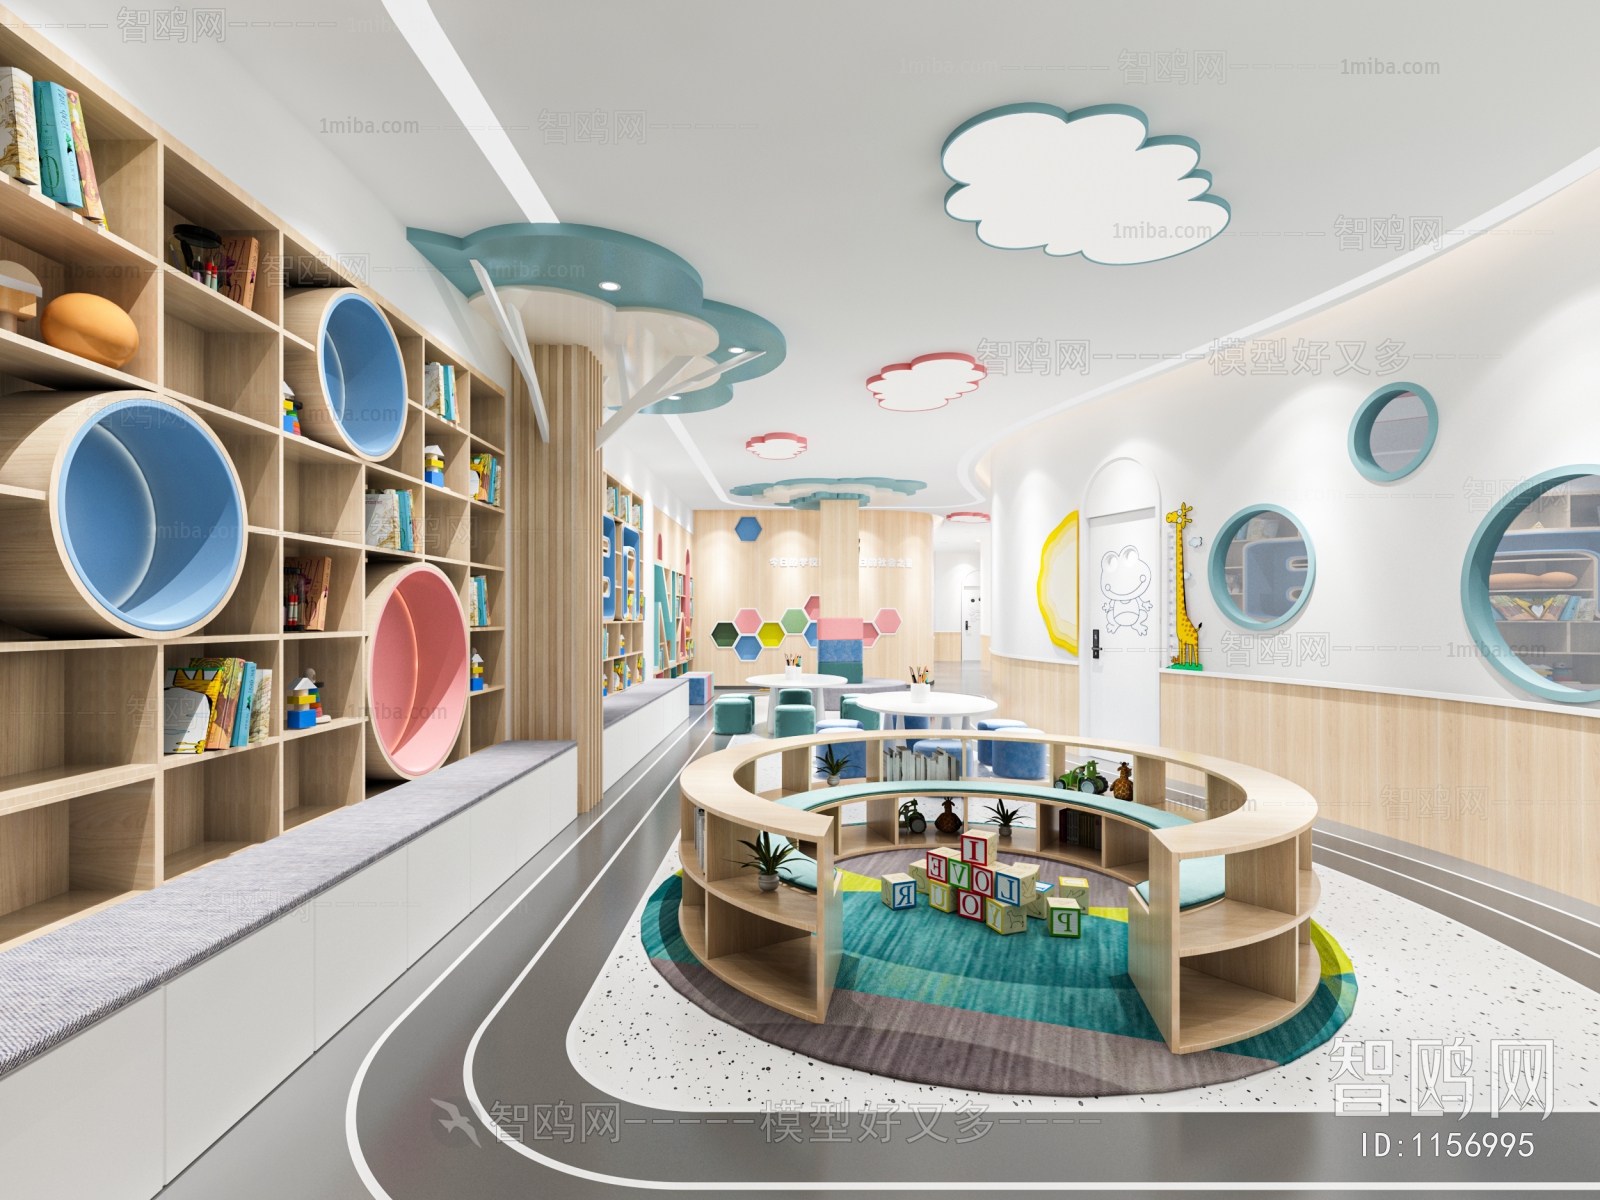 Modern Children's Reading Room